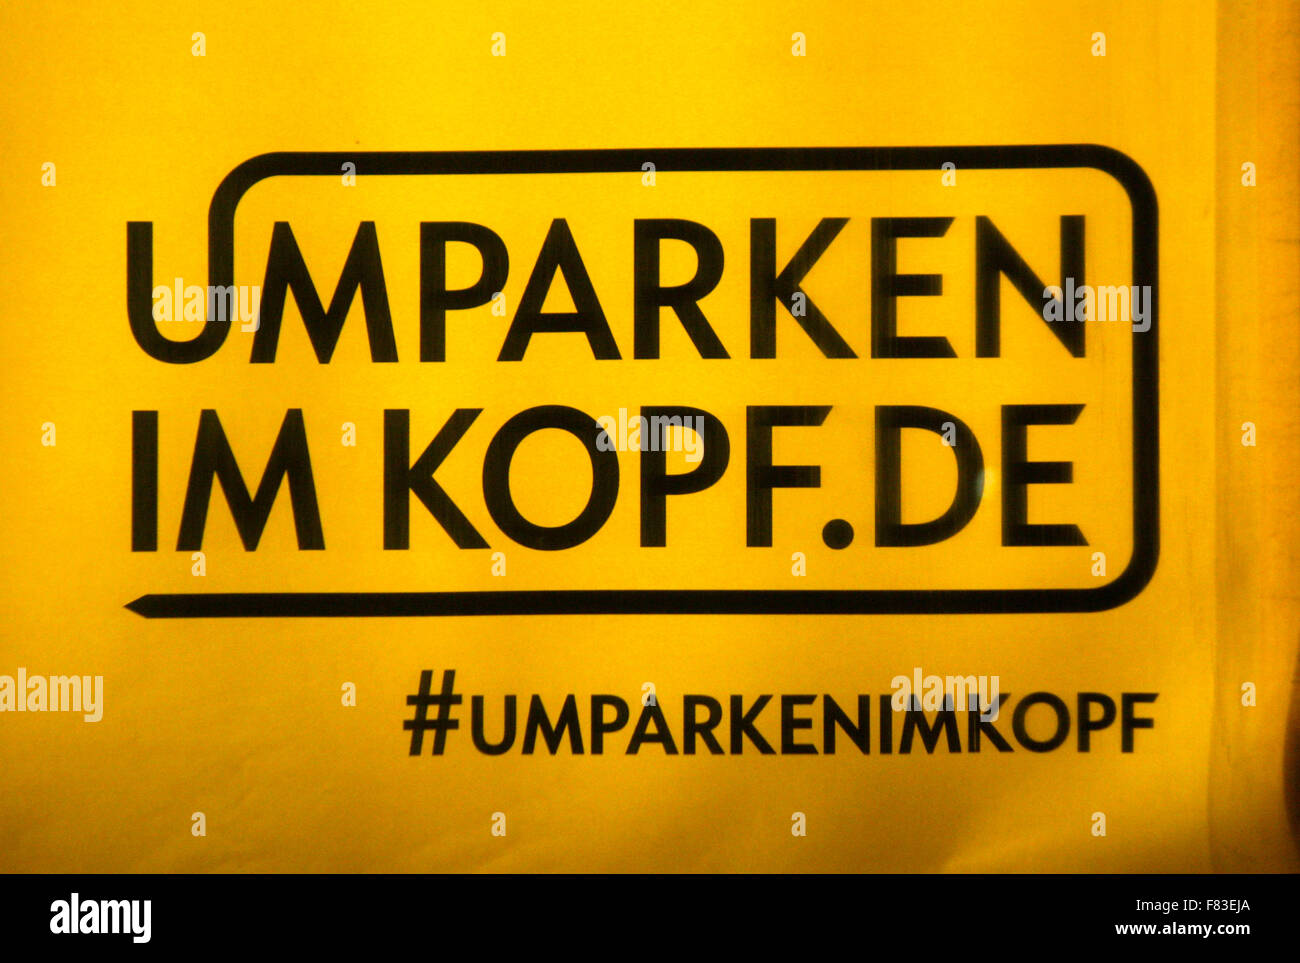 Markenname: 'Umparken im Kopf' von 'Opel', Berlin. Stock Photo